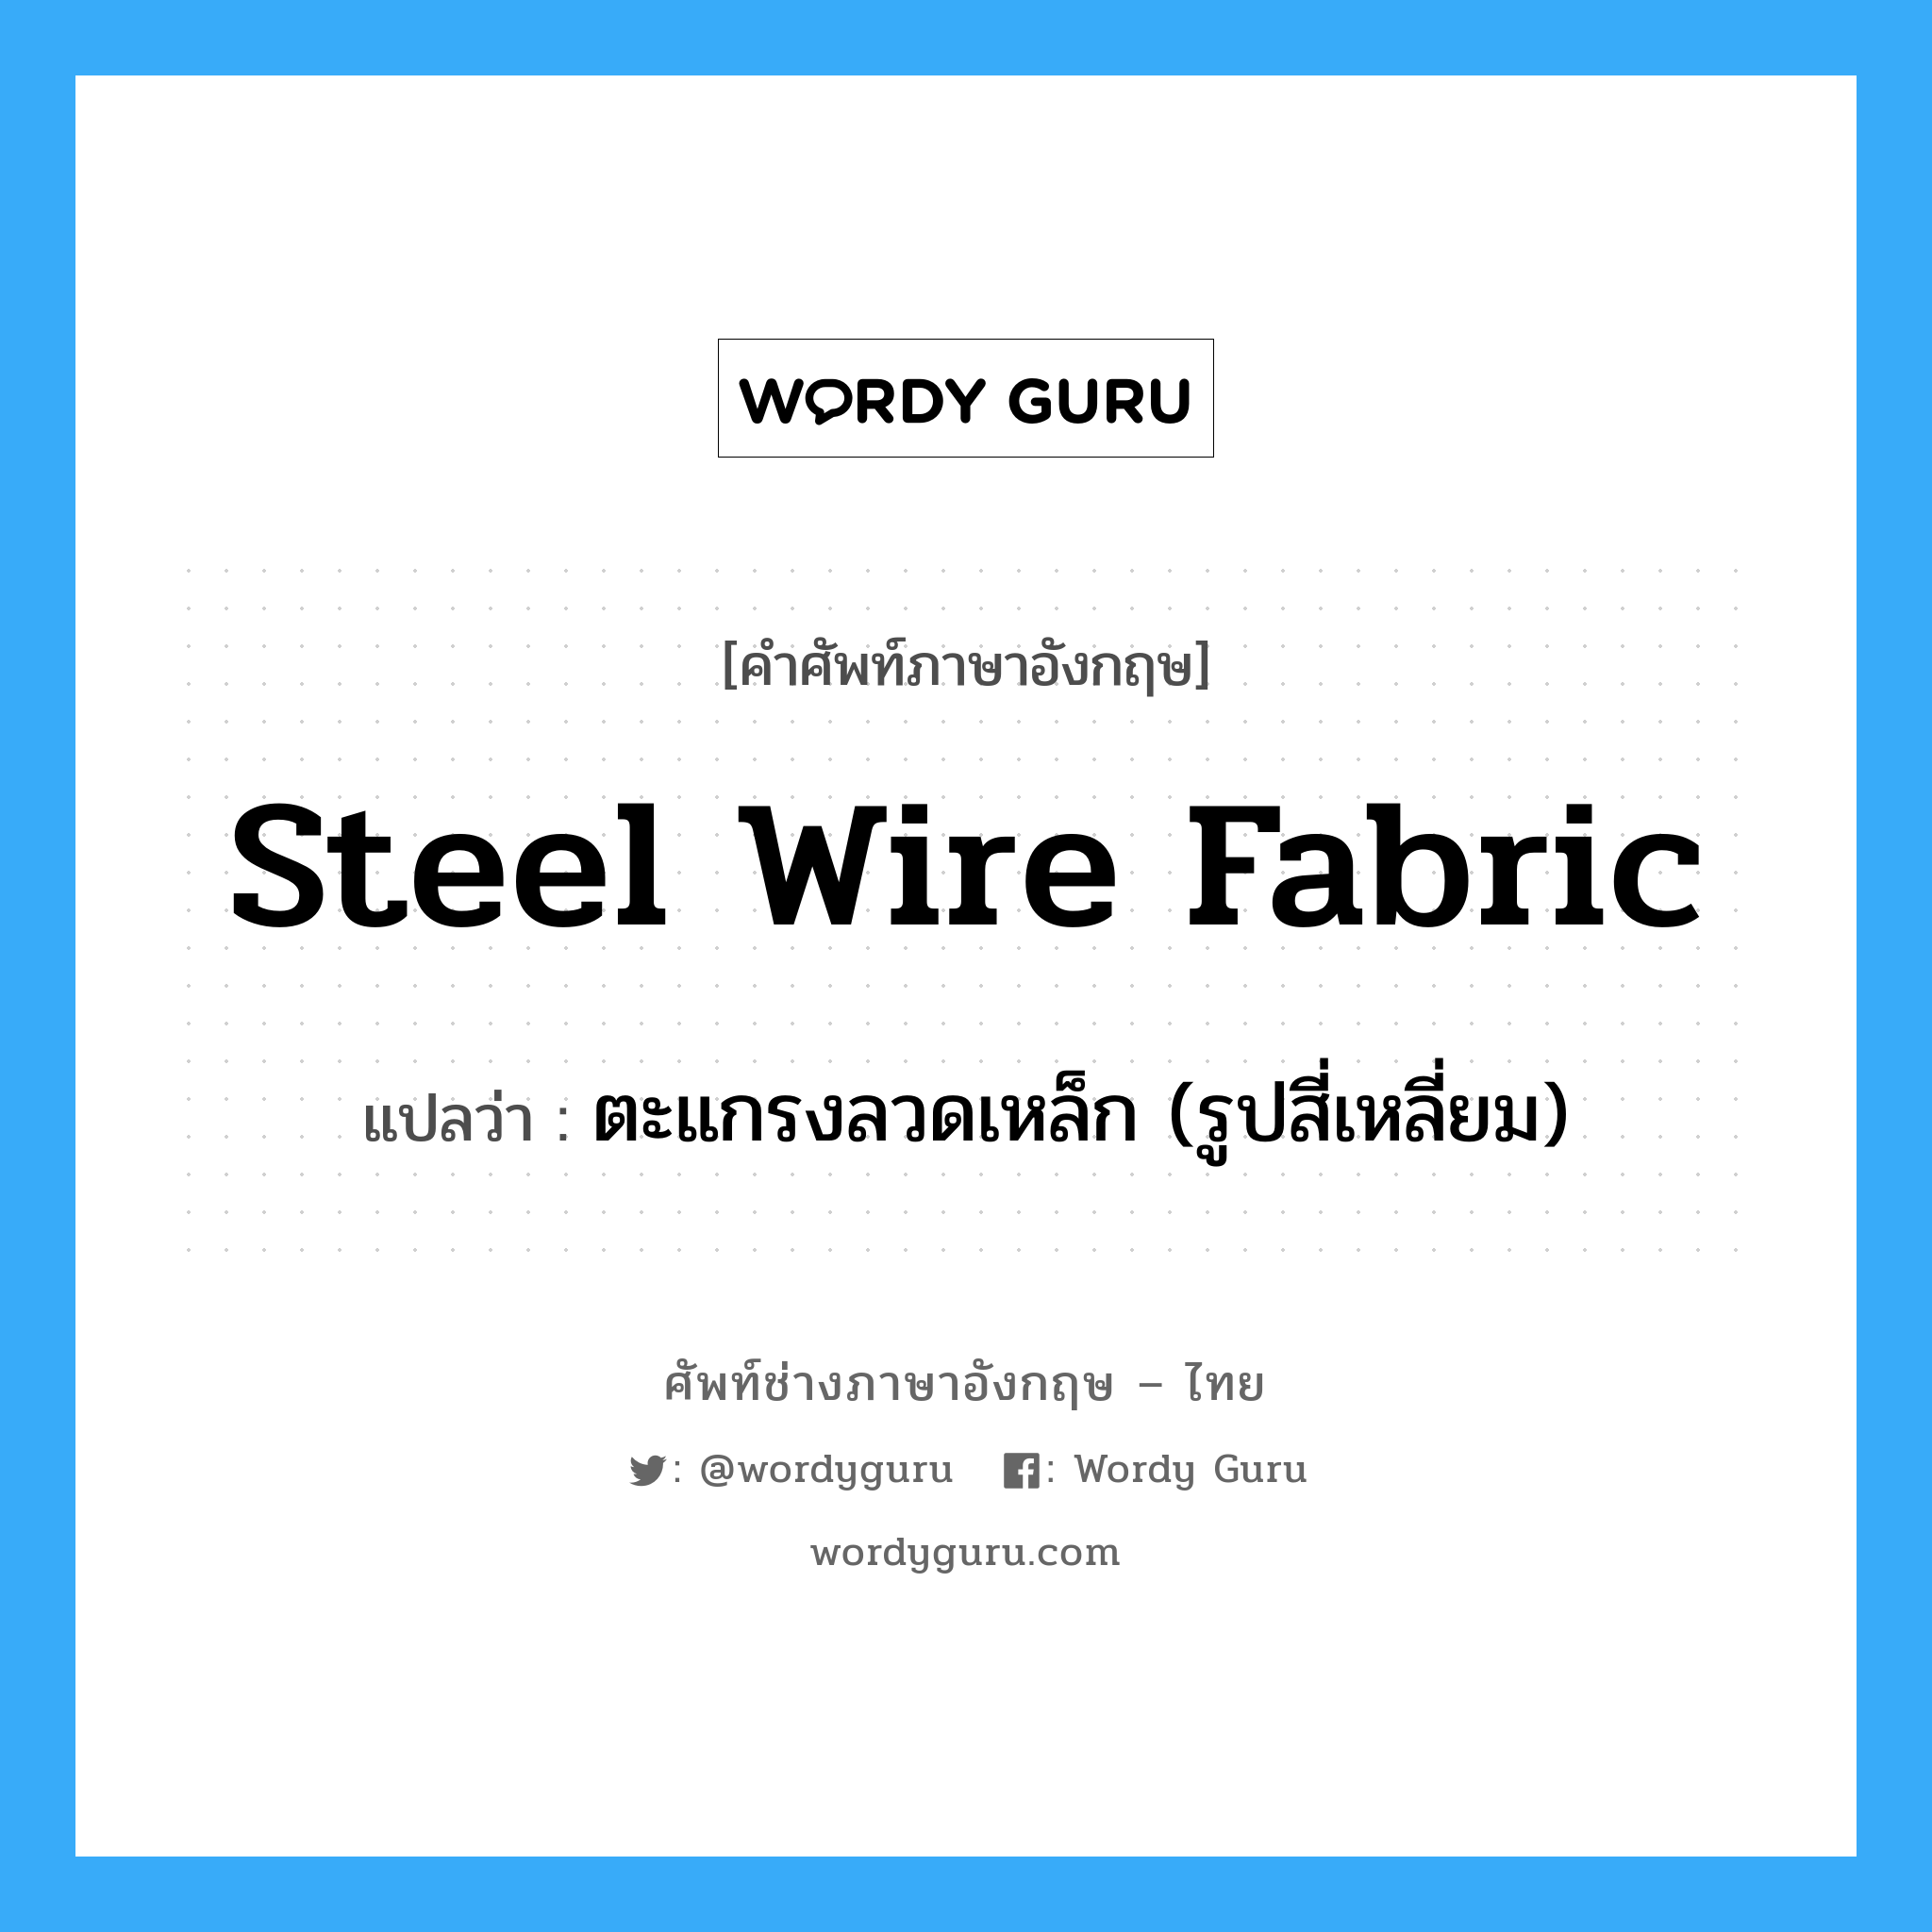 steel wire fabric แปลว่า?, คำศัพท์ช่างภาษาอังกฤษ - ไทย steel wire fabric คำศัพท์ภาษาอังกฤษ steel wire fabric แปลว่า ตะแกรงลวดเหล็ก (รูปสี่เหลี่ยม)